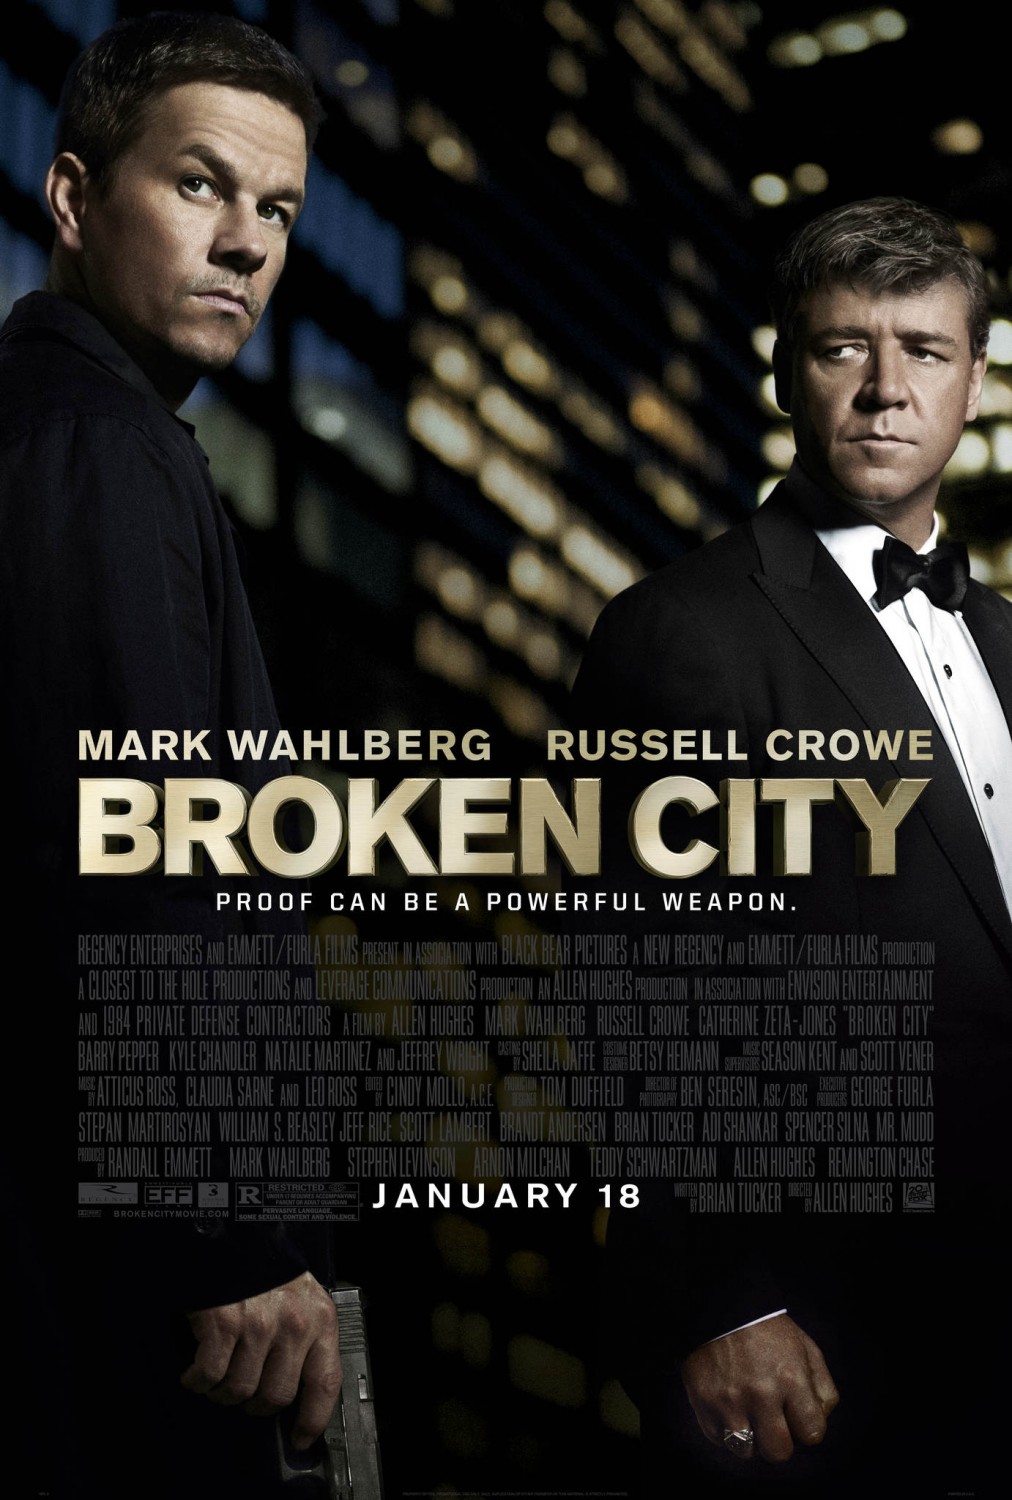 Marl Wahlberg ve Russell Crowe’dan Broken City (Bitik Şehir) sinemalarda (1)